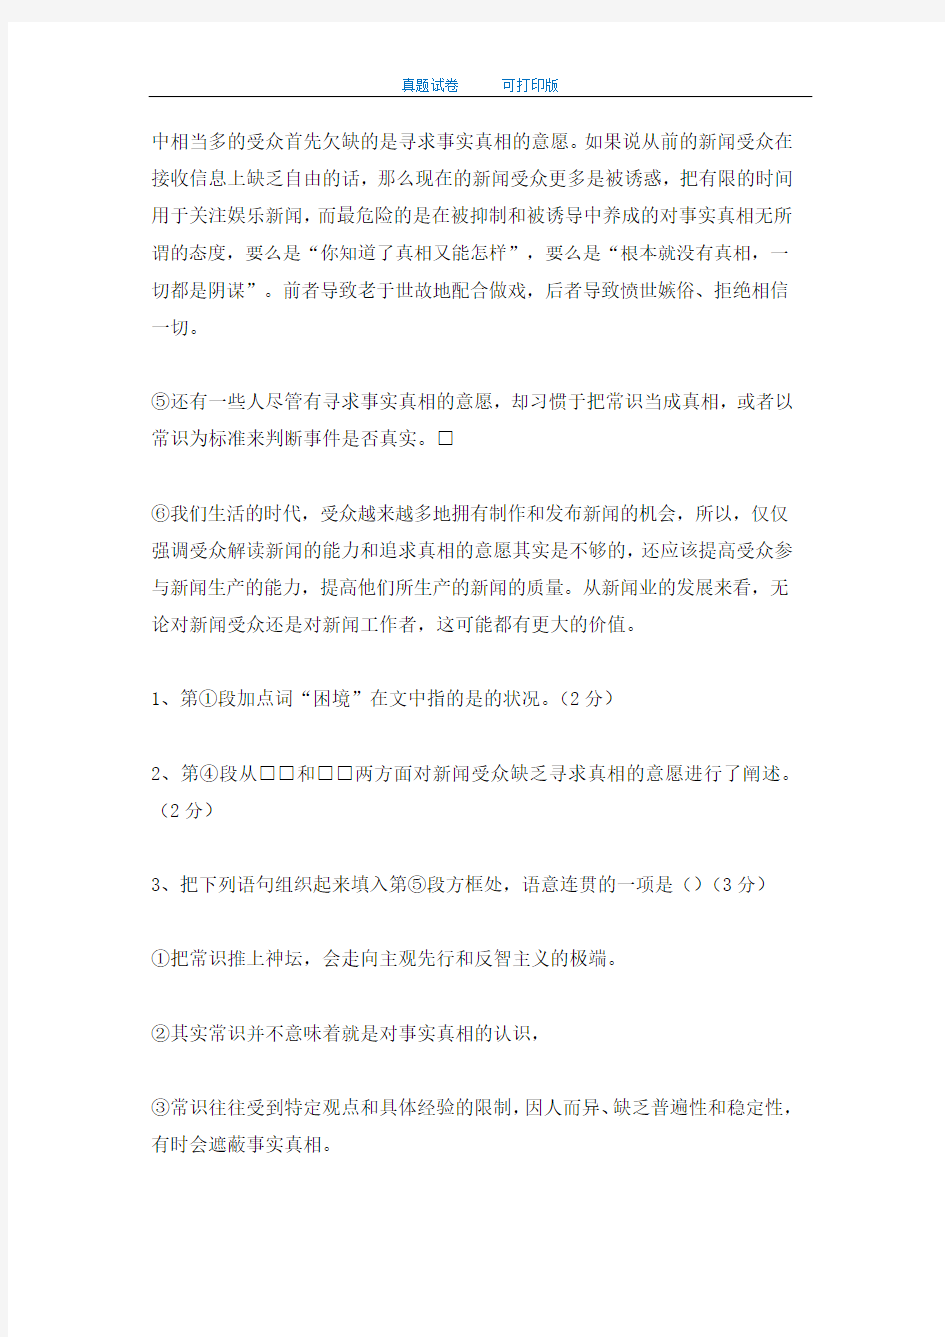 2014年上海市高考语文试卷及答案(全国统一考试)-打印版